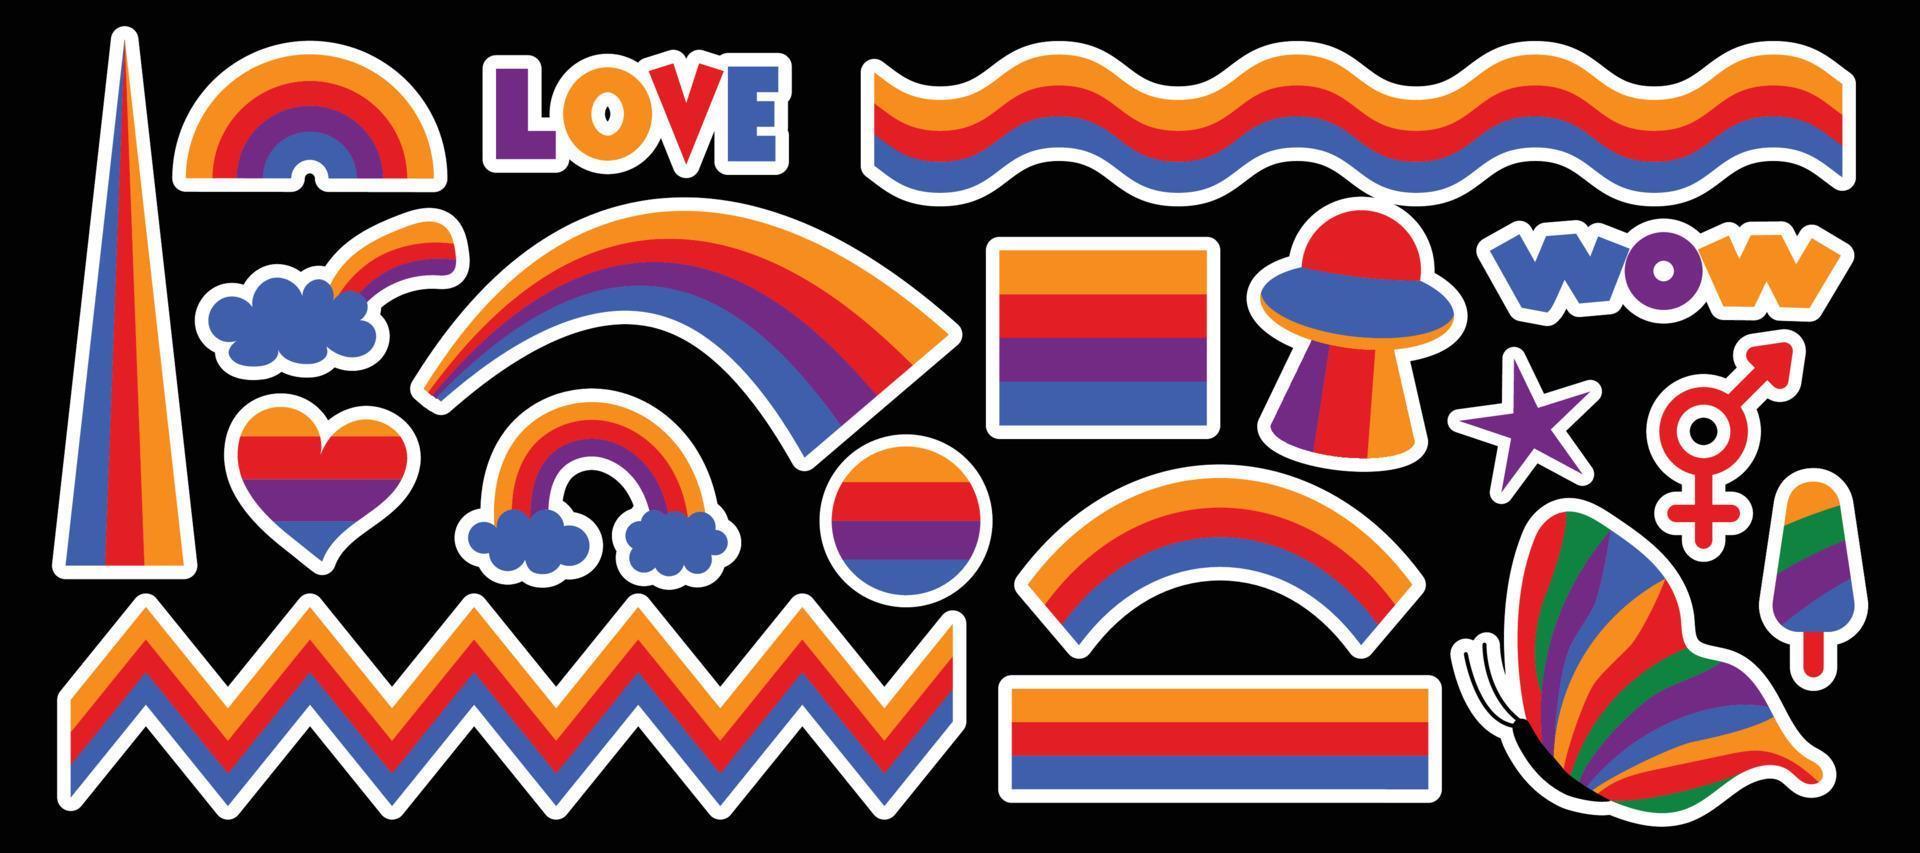 conjunto de elementos psicodélicos hipster retro cool arco iris. una colección de maravillosos cliparts iridiscentes de los años 70. diseño abstracto de pegatinas de dibujos animados. ilustración vectorial de tendencia vector